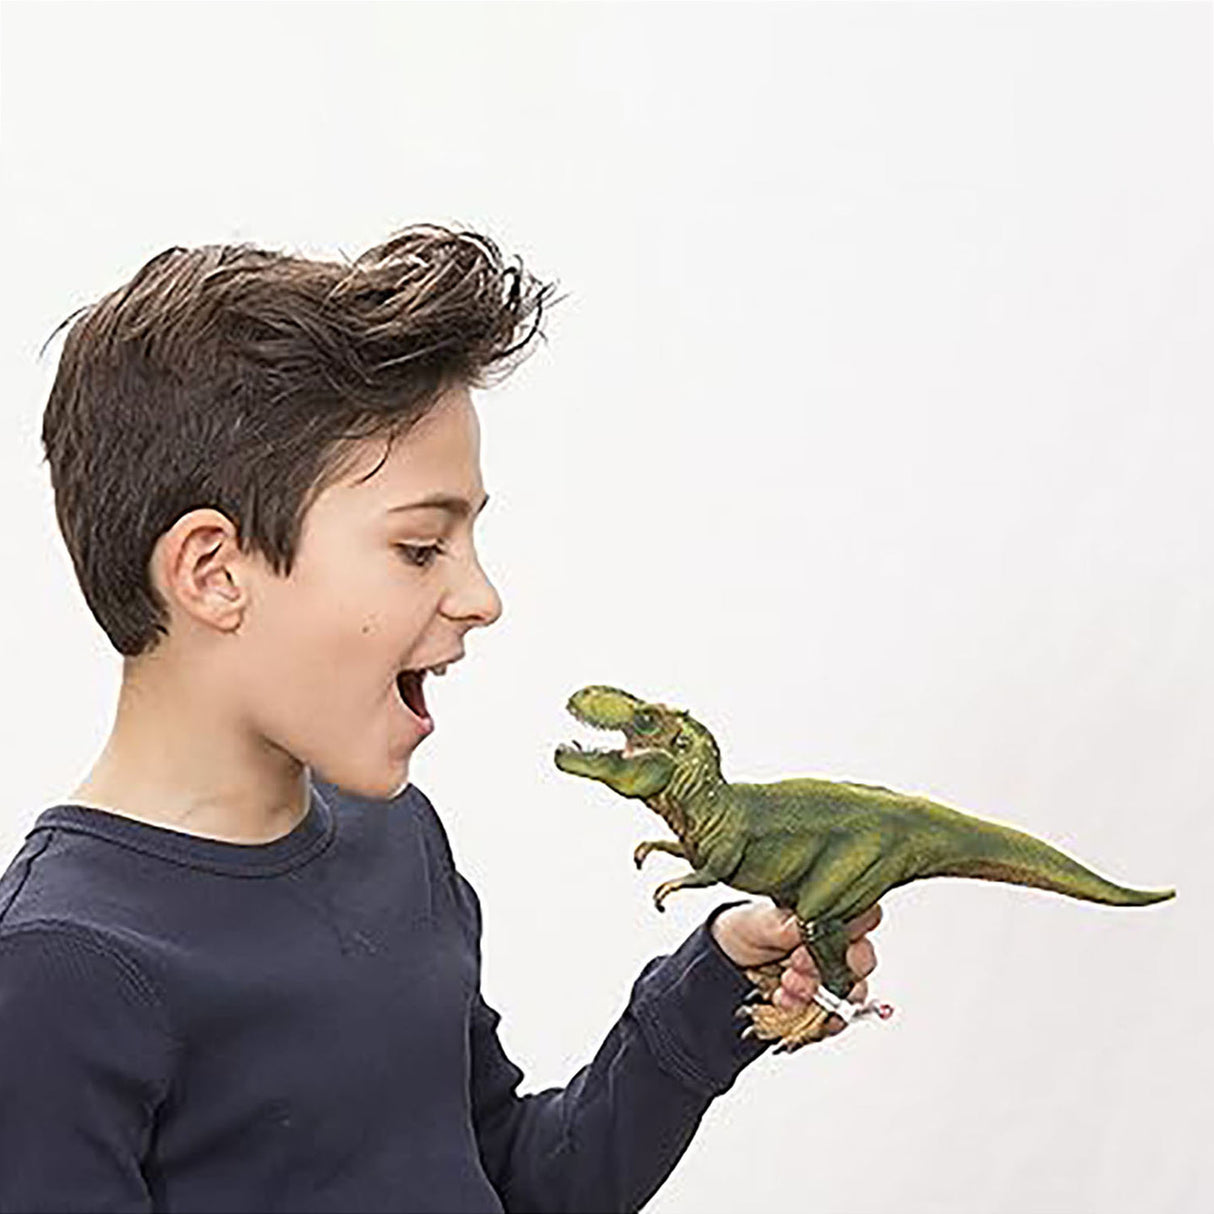 Schleich Tyrannosaurus Rex Dinosaur Figure - Roaring